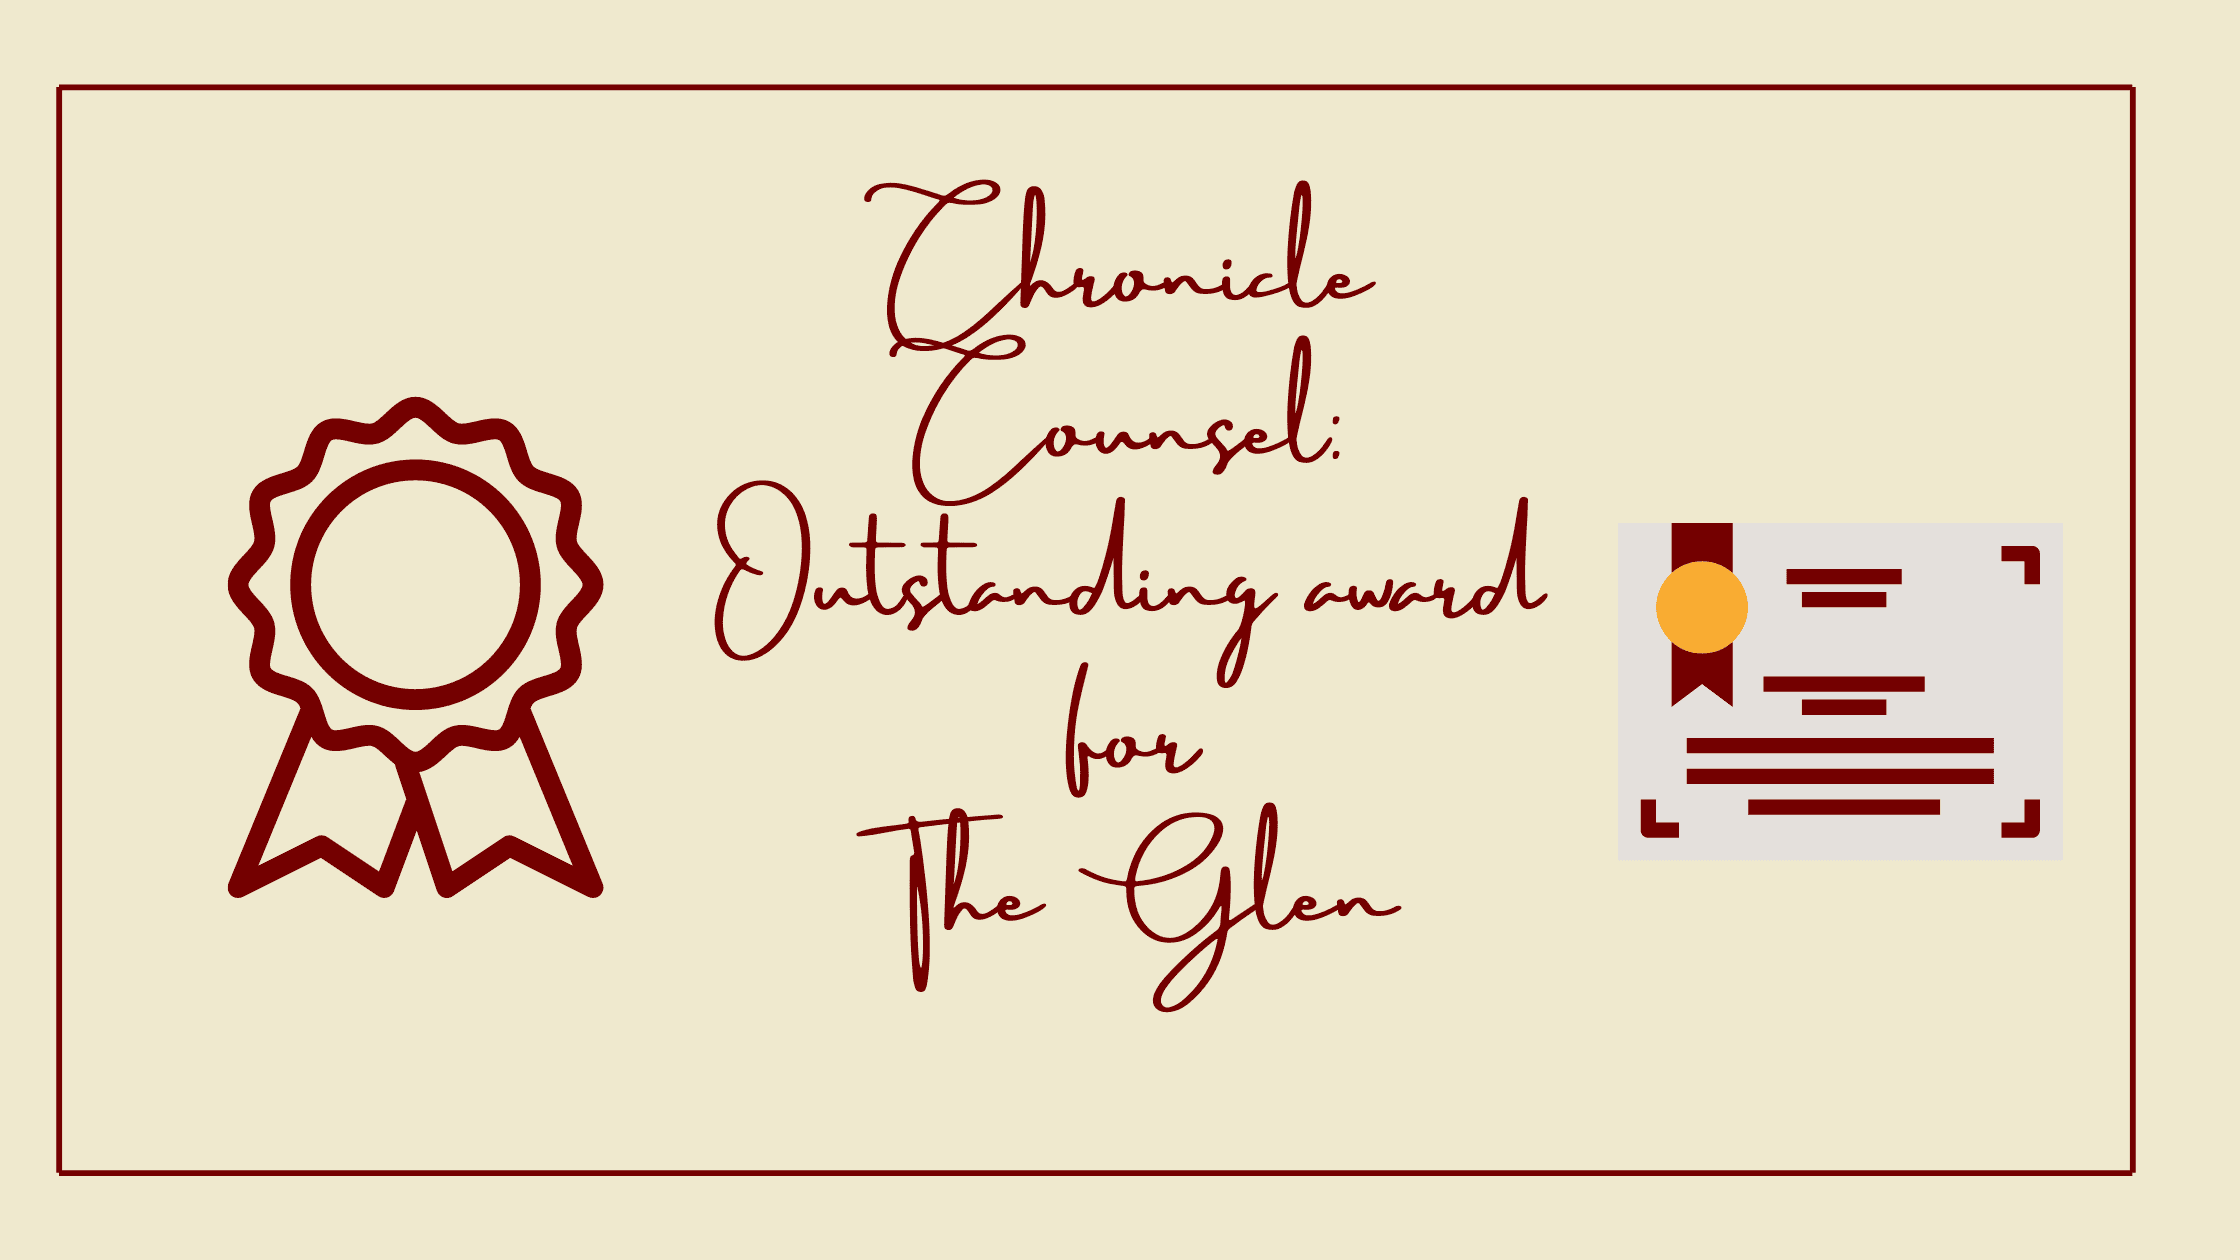 Outstanding Award for The Glen